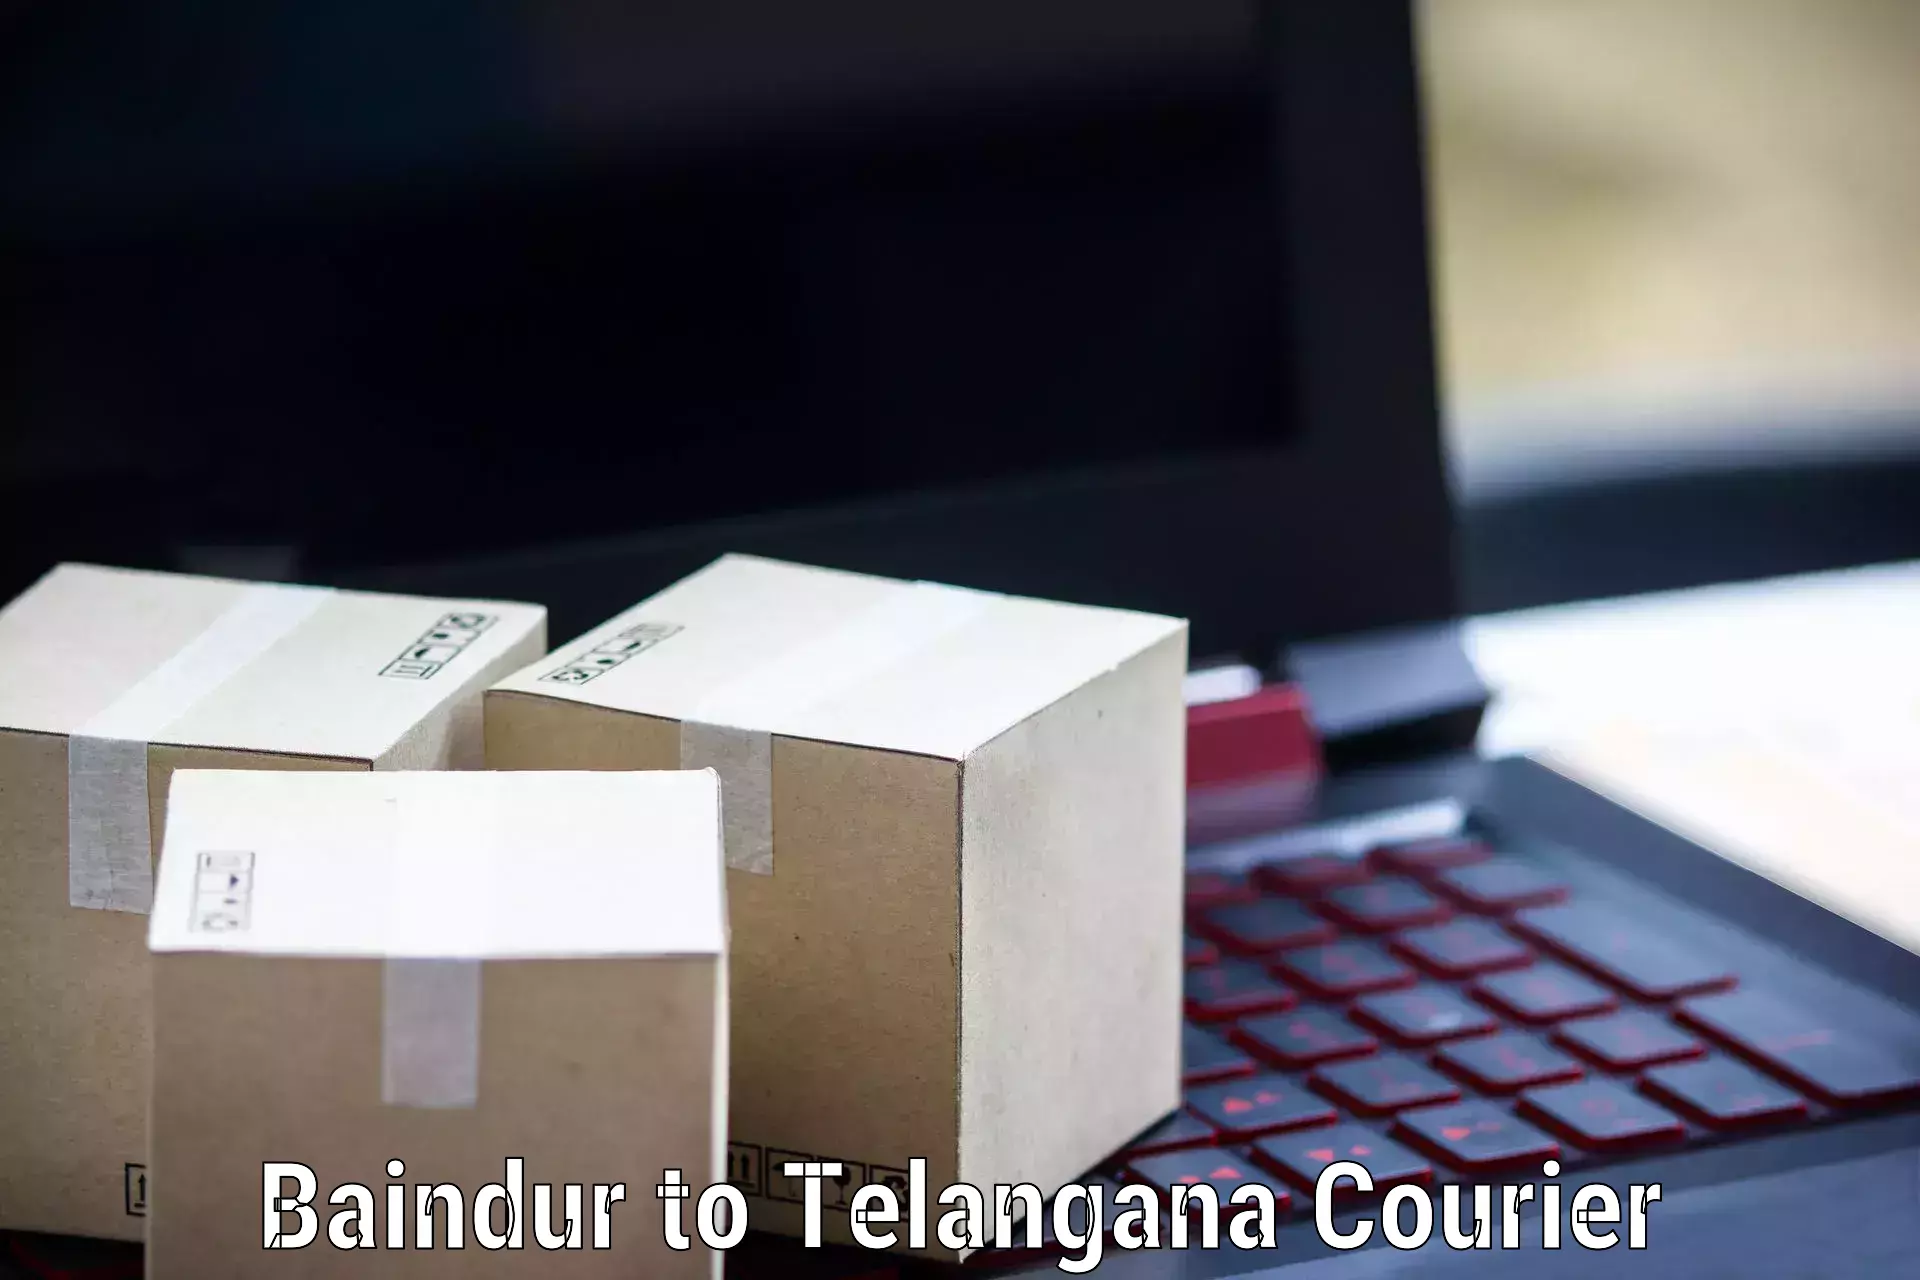 Easy access courier services Baindur to Kamalapur